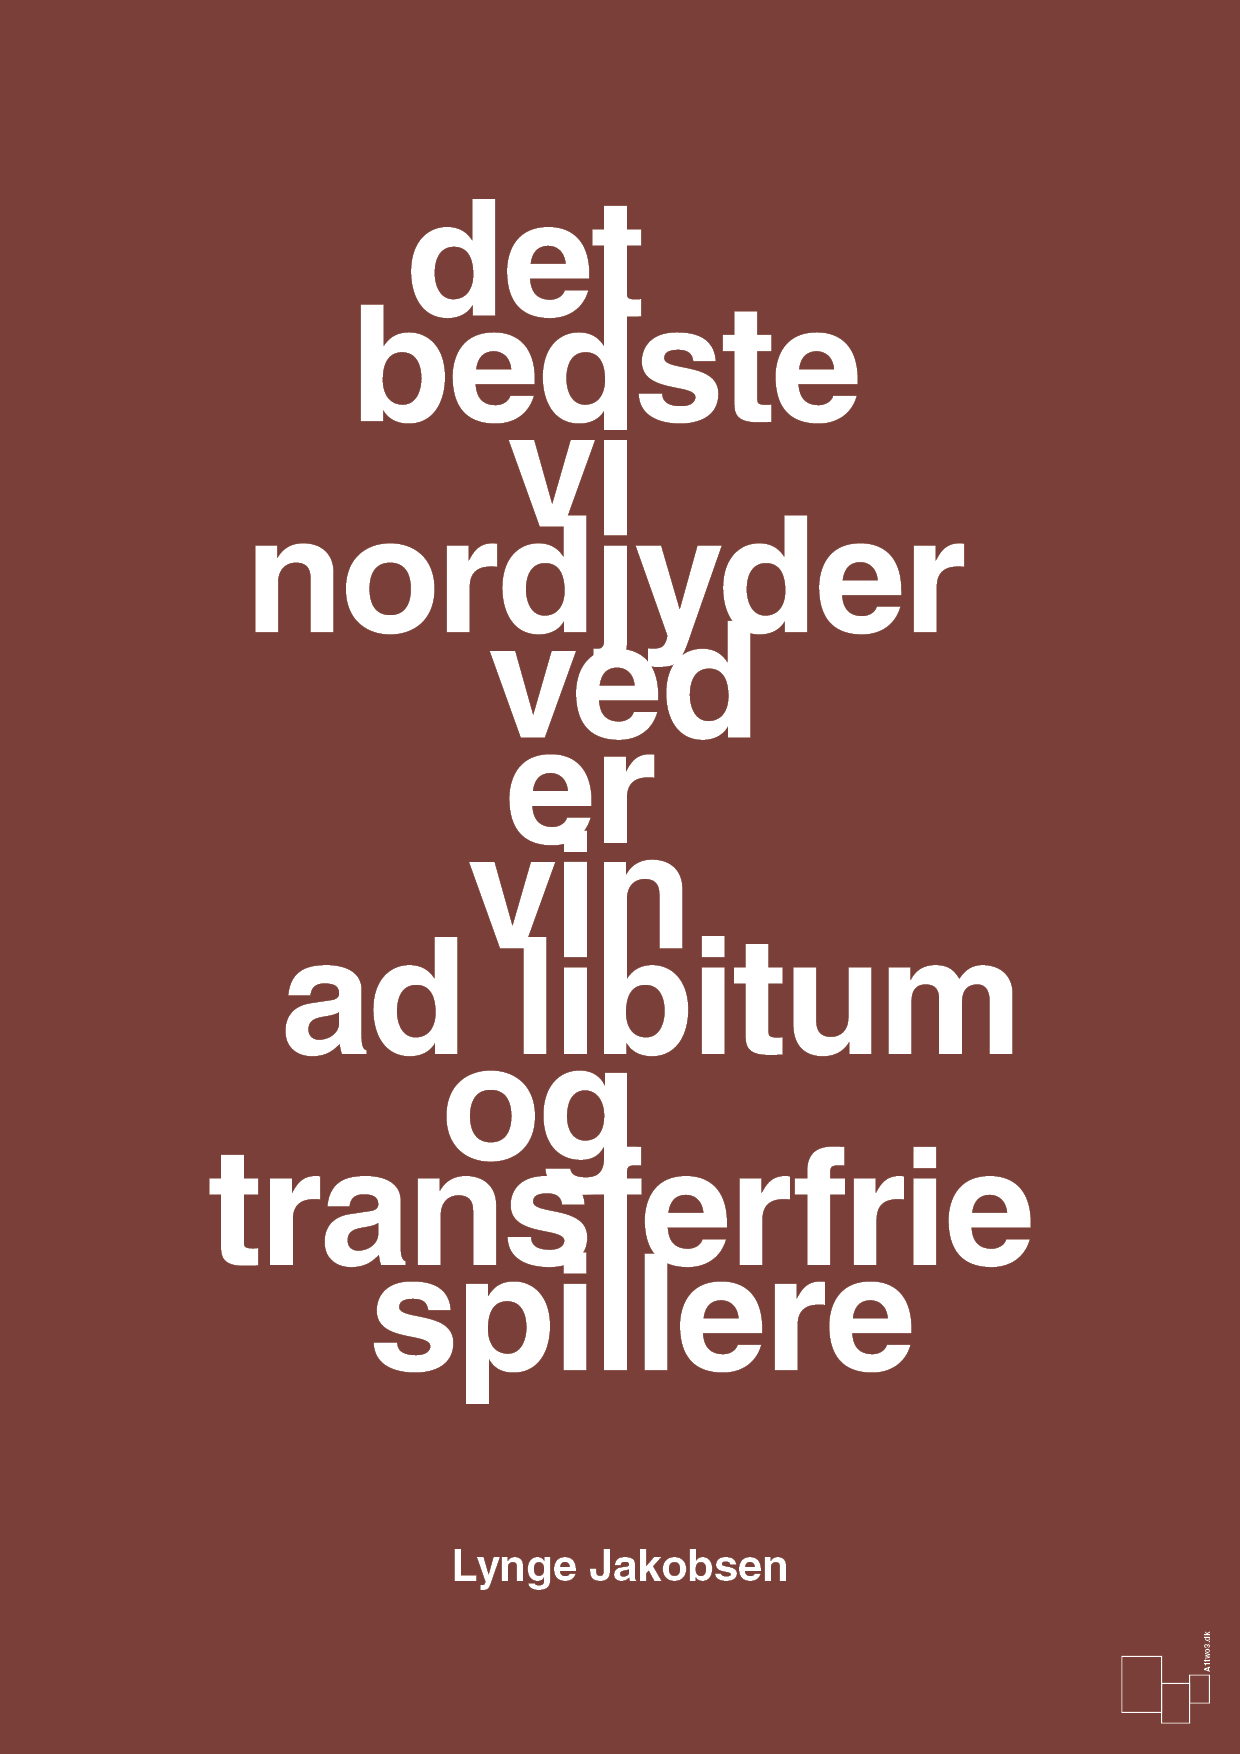 det bedste vi nordjyder ved er vin ad libitum og transferfrie spillere - Plakat med Citater i Red Pepper